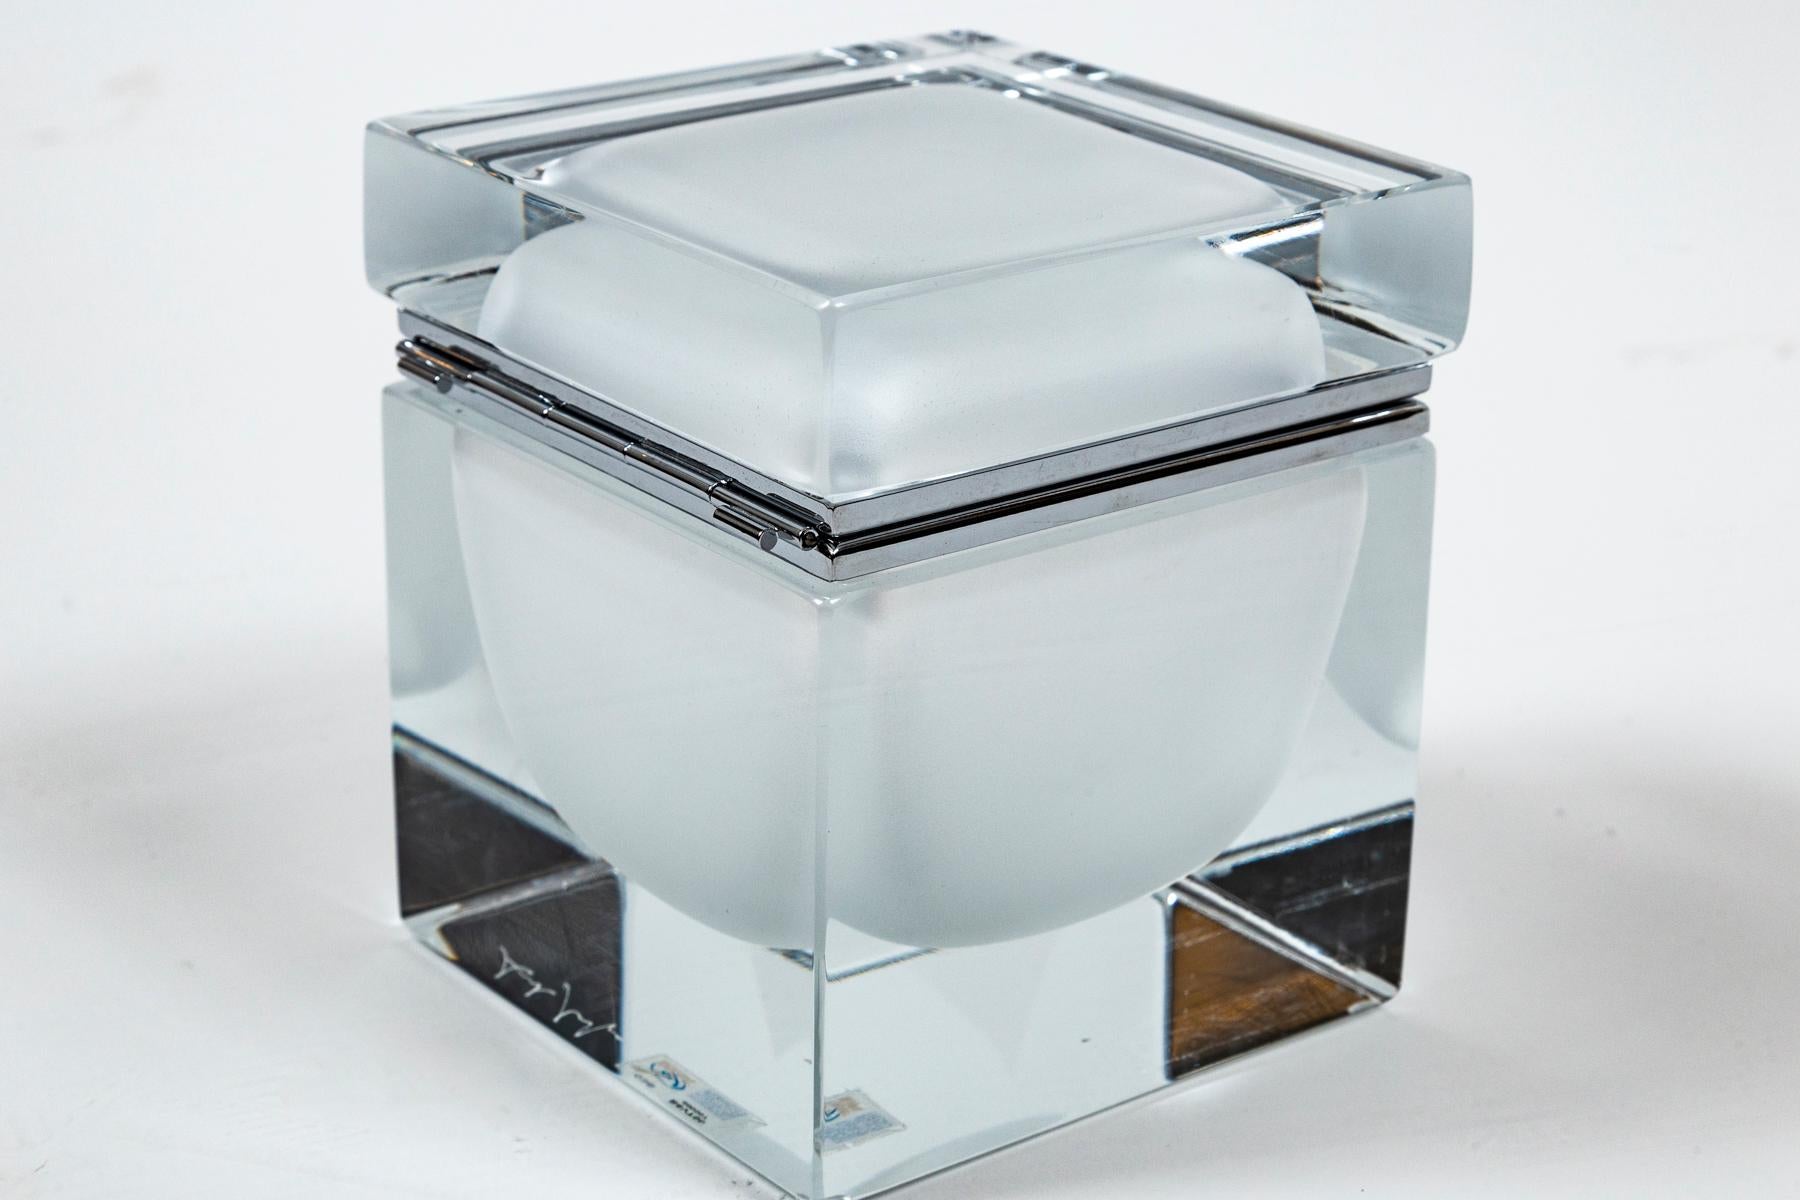 Eine von einer Art Murano handgefertigte mittelgroße quadratische Dose aus klarem mundgeblasenem Glas mit einer schwebenden mattierten weißen Kugel in der Mitte, individuelle Größe für jede Dose mit Nickel auf Messingbeschlägen.
Die Schachteln sind